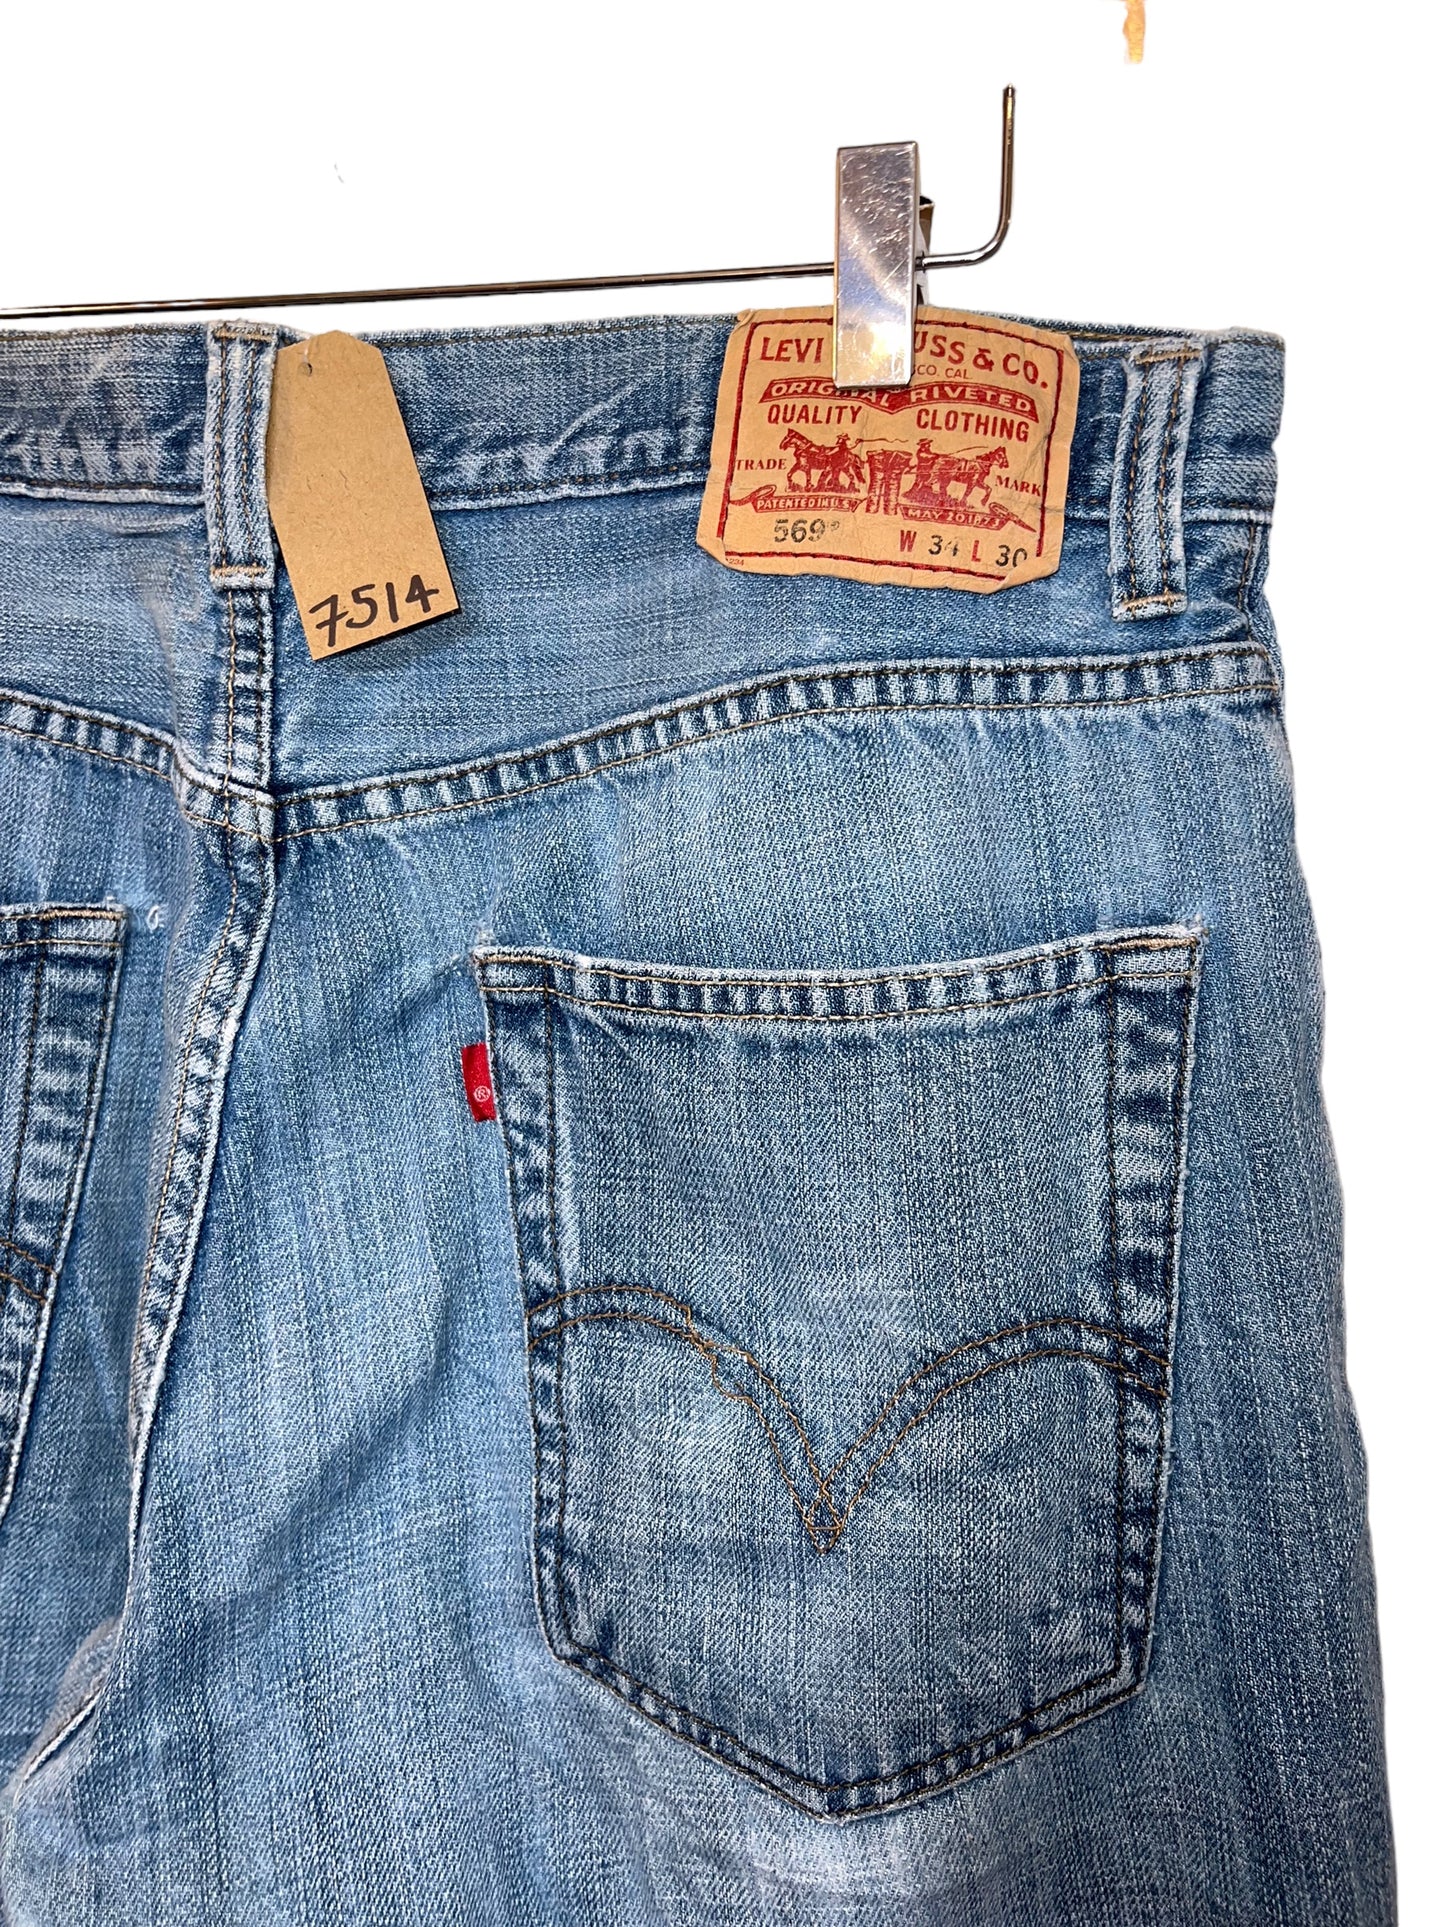 Levi 569 jeans (34x30)